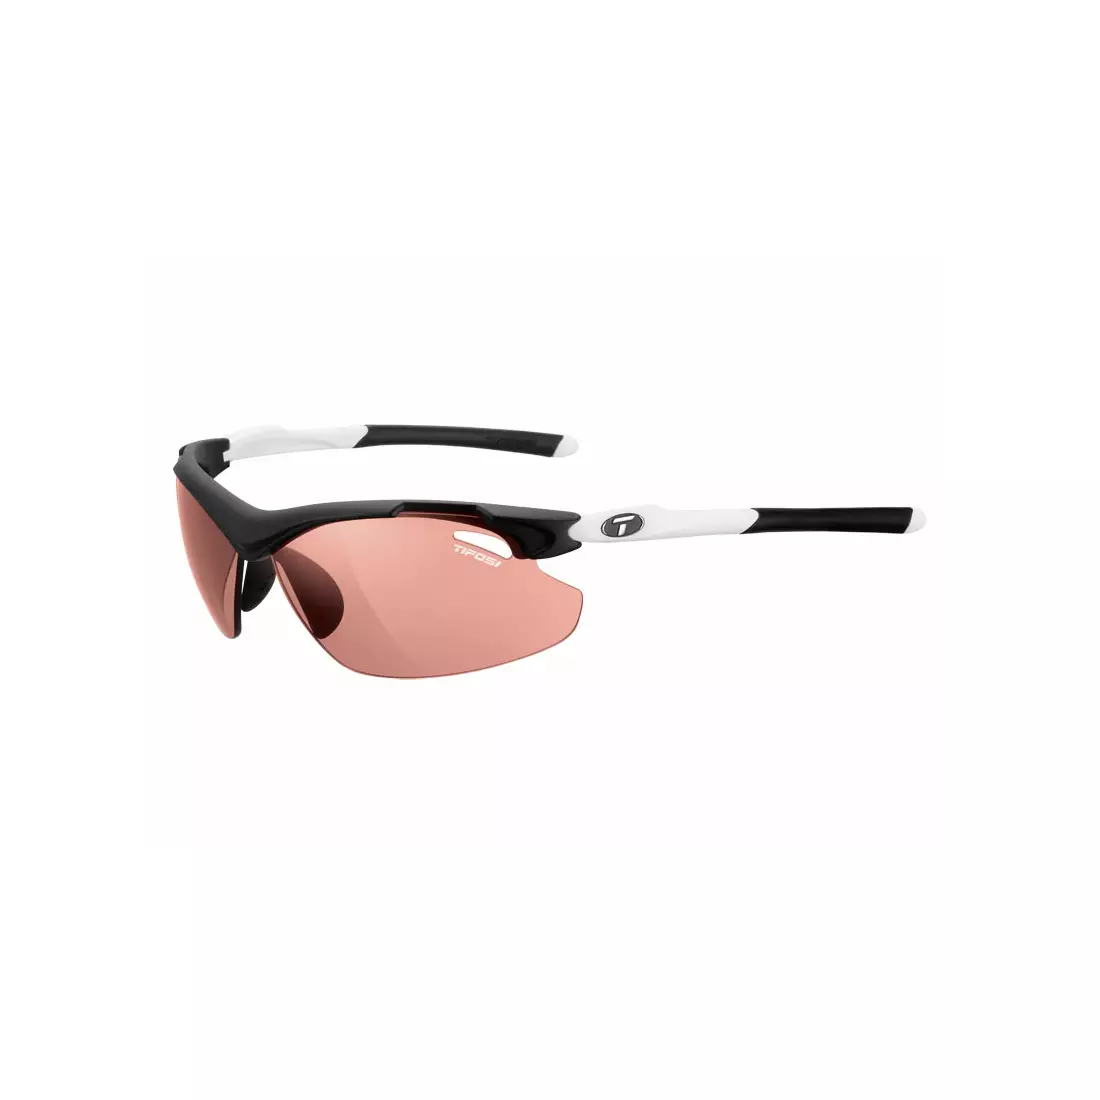 TIFOSI TYRANT 2.0 FOTOTEC schwarz-weiße photochrome Brille (1 Glas High Speed Red PHOTOCHROME 35,3%-13,5% Lichtdurchlässigkeit) TFI-1120306430